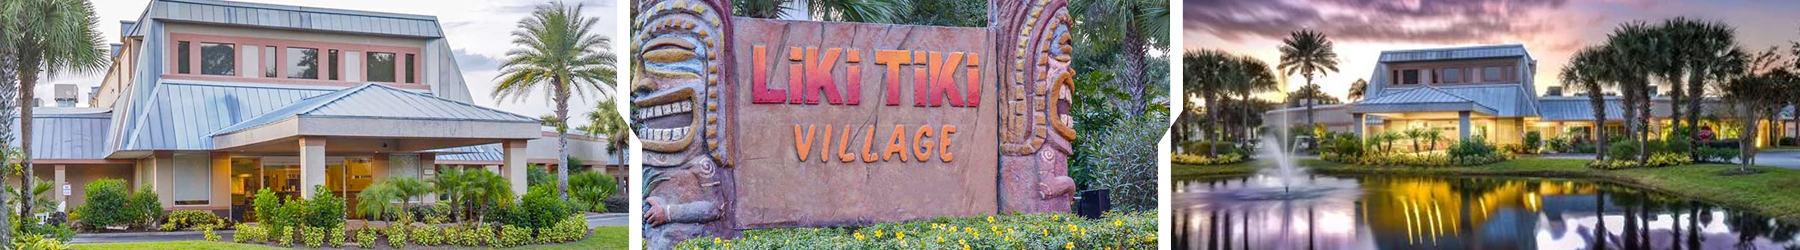 Liki Tiki Village Resort